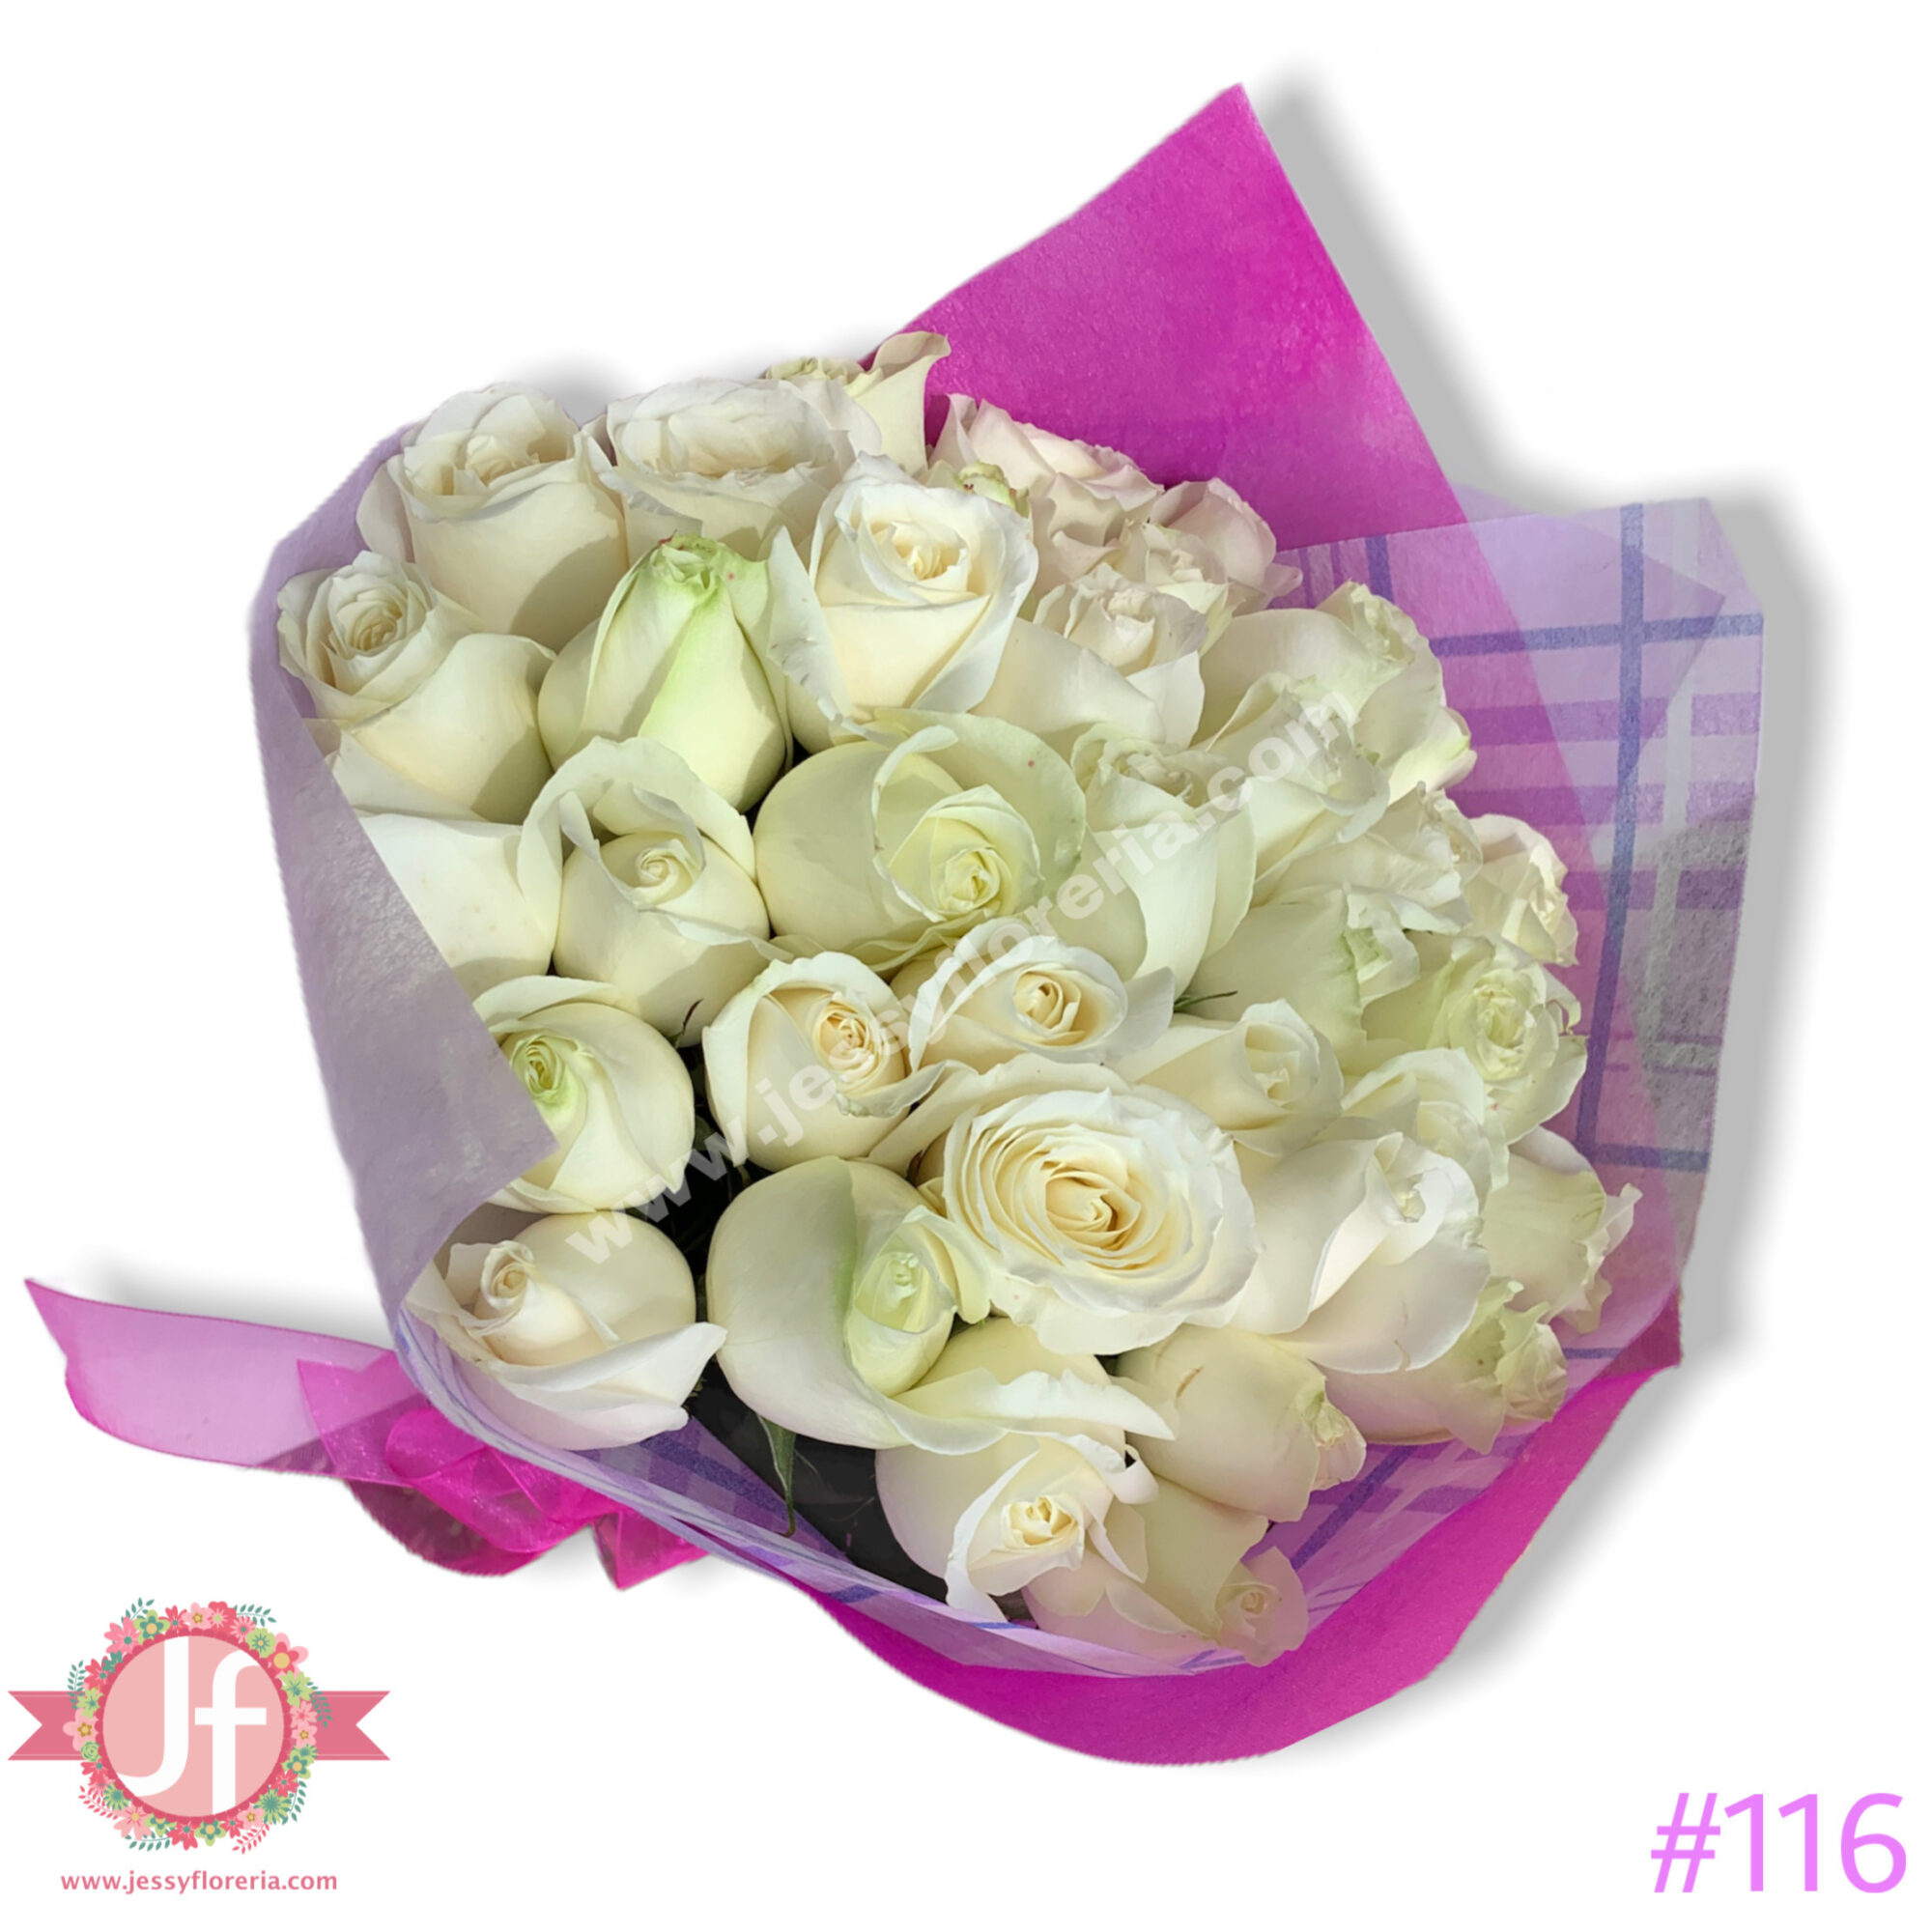 Maxi ramo de 300 rosas blancas con papel coreano